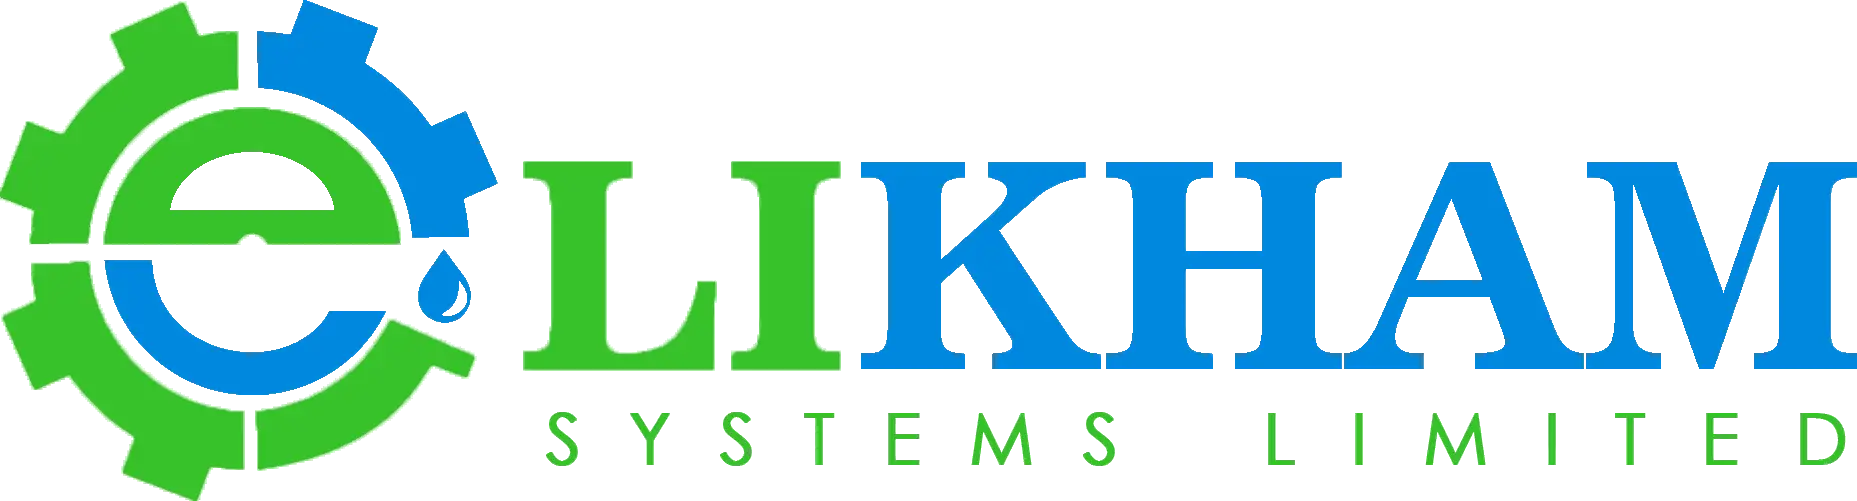 Elikham Systems